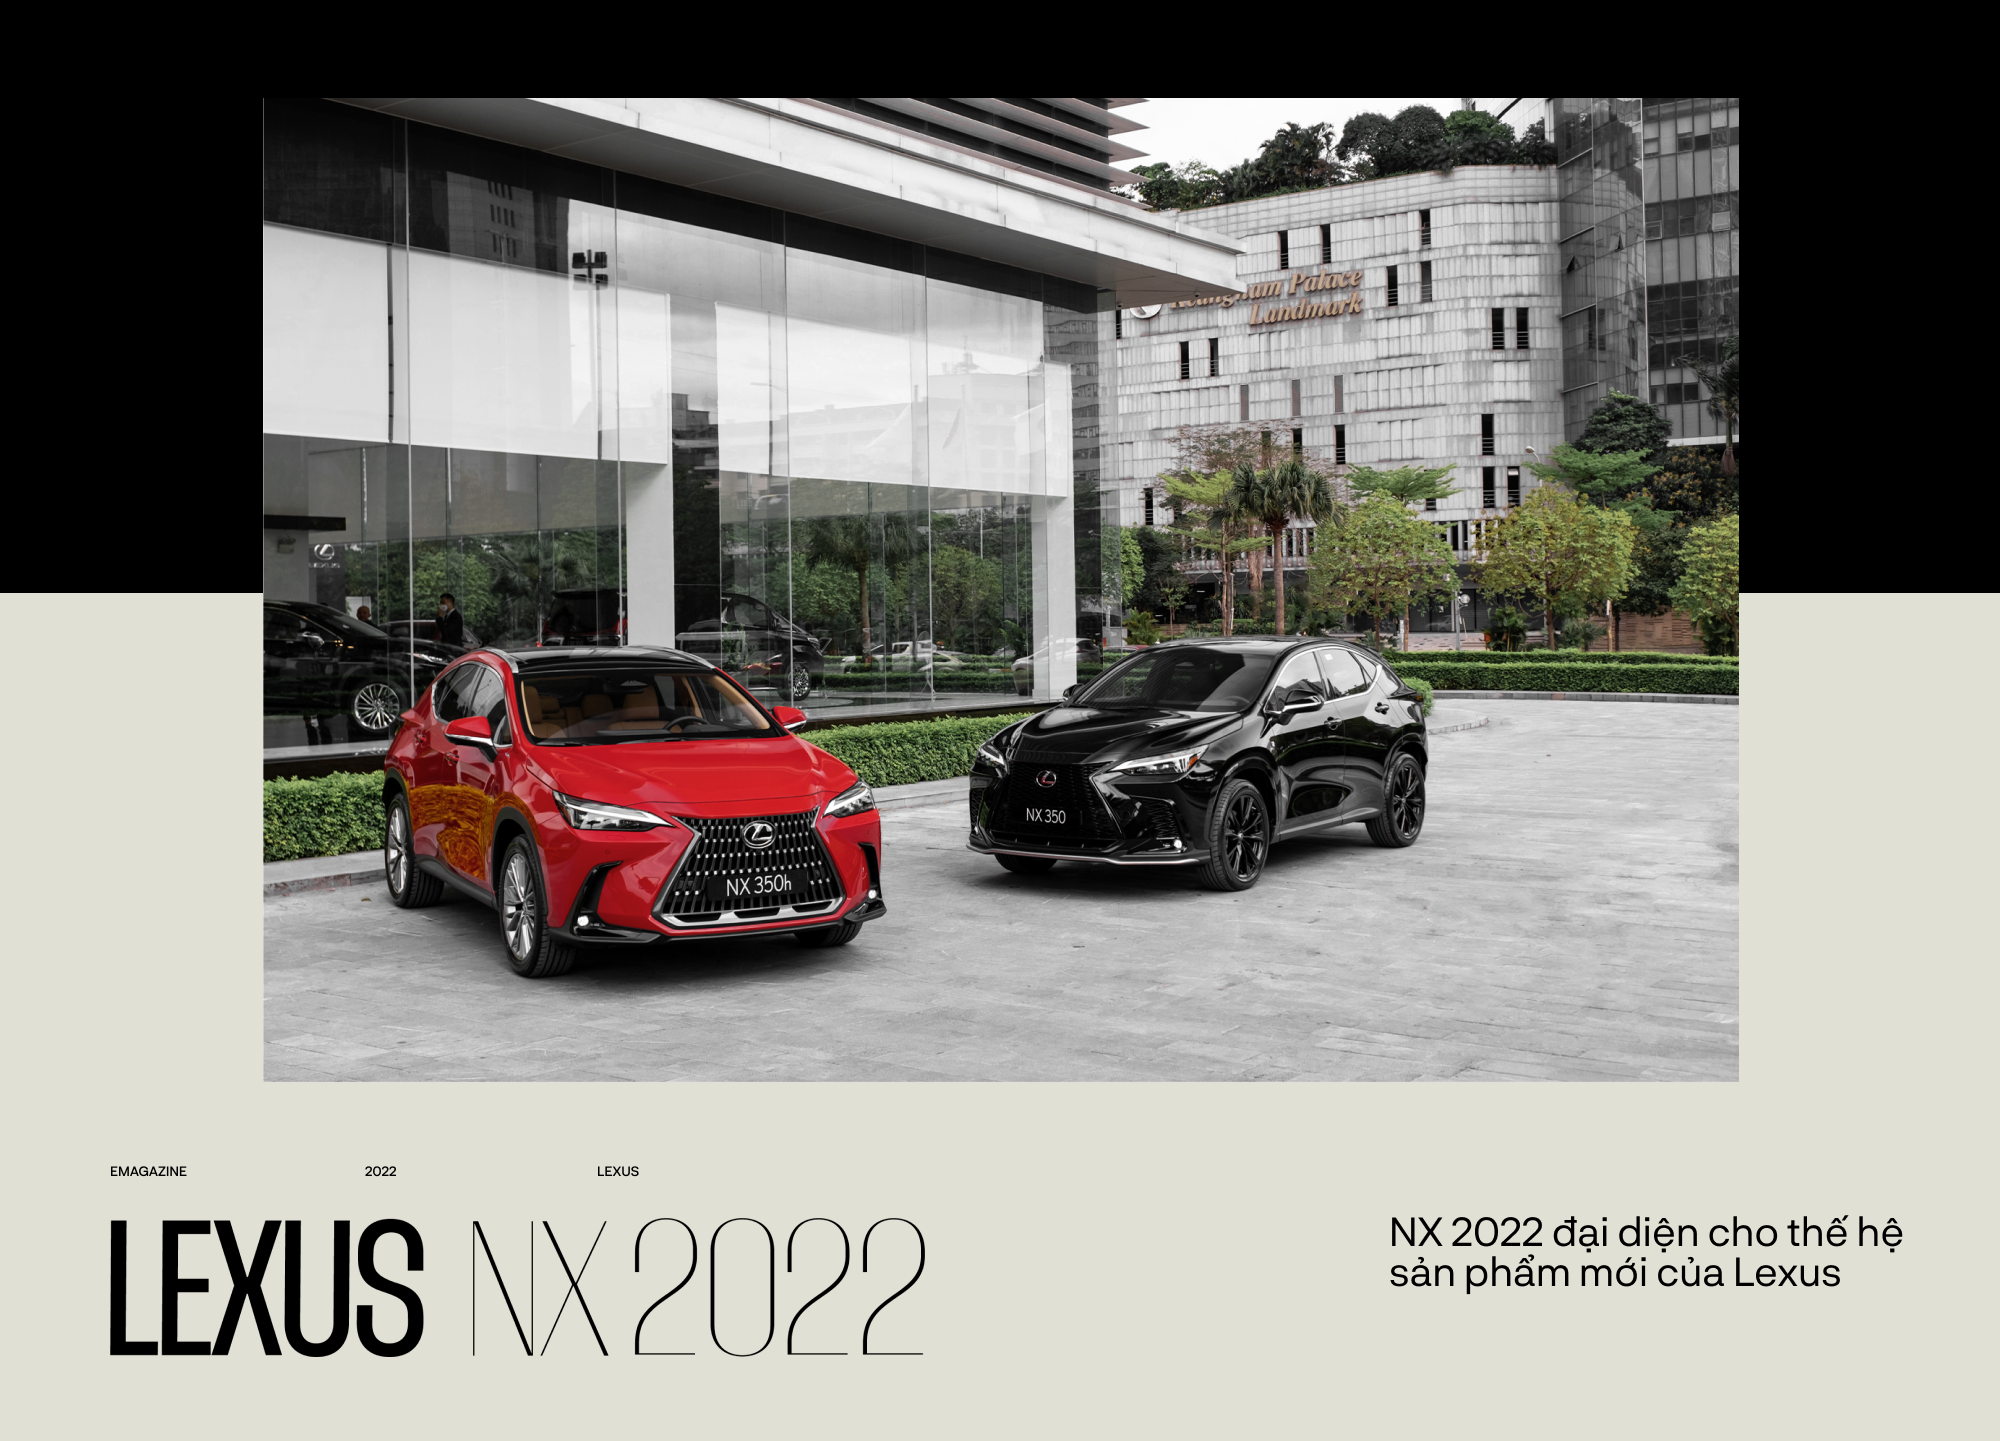 NX thành công nhờ vào những giá trị chưa từng có trên Lexus - Ảnh 2.